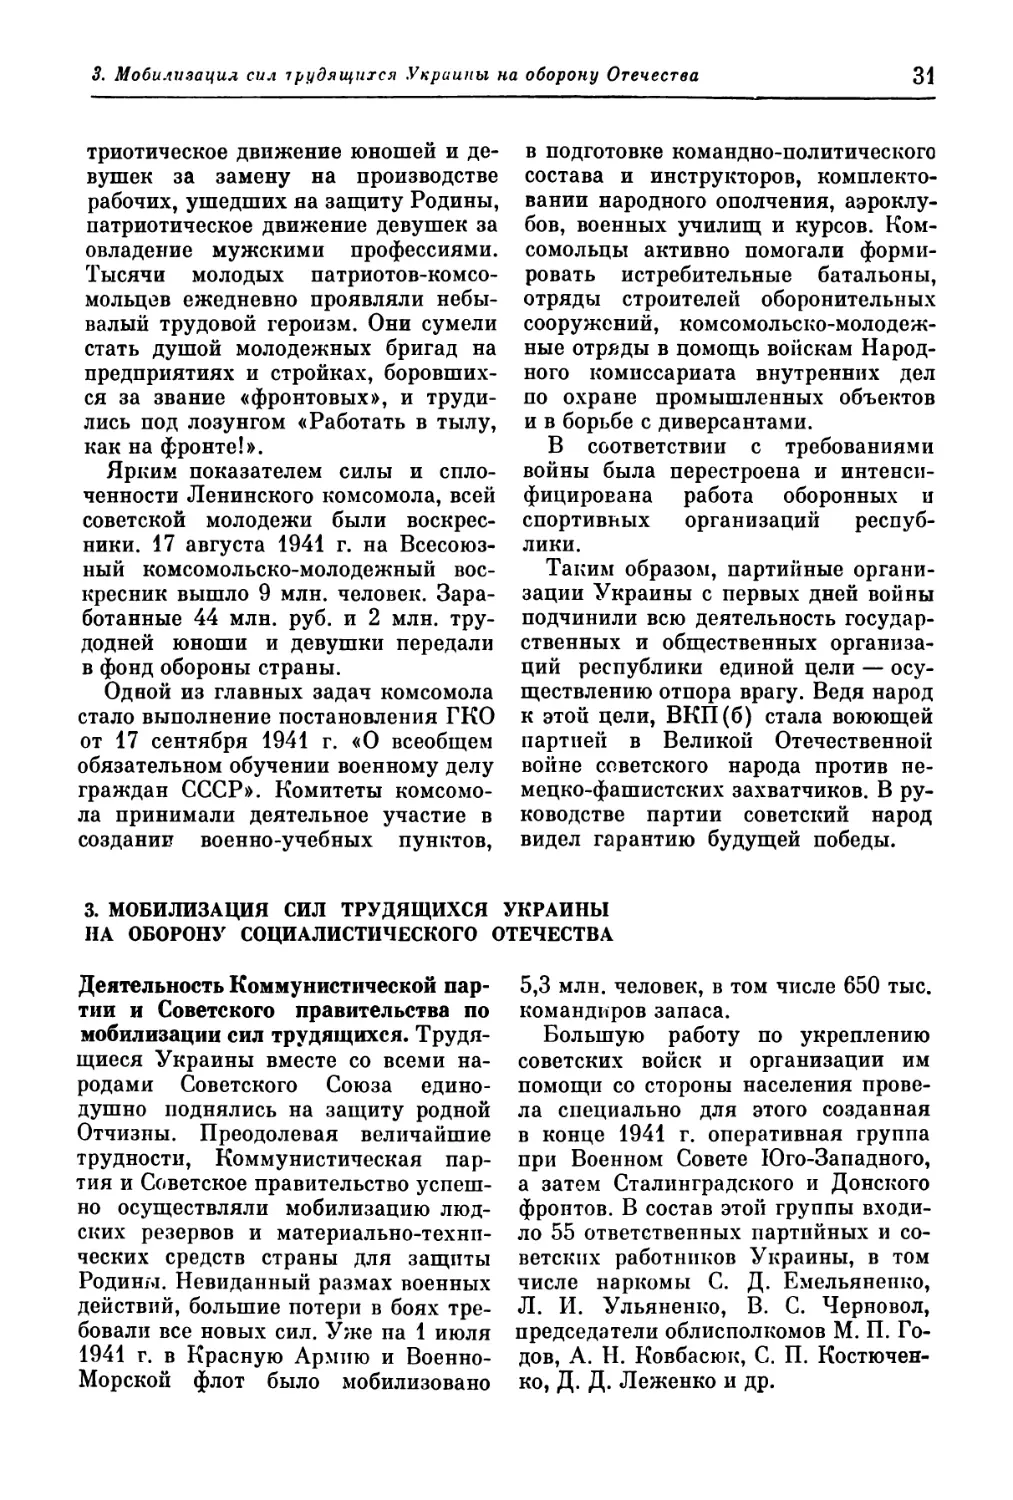 3. Мобилизация сил трудящихся Украины на оборону социалистического Отечества